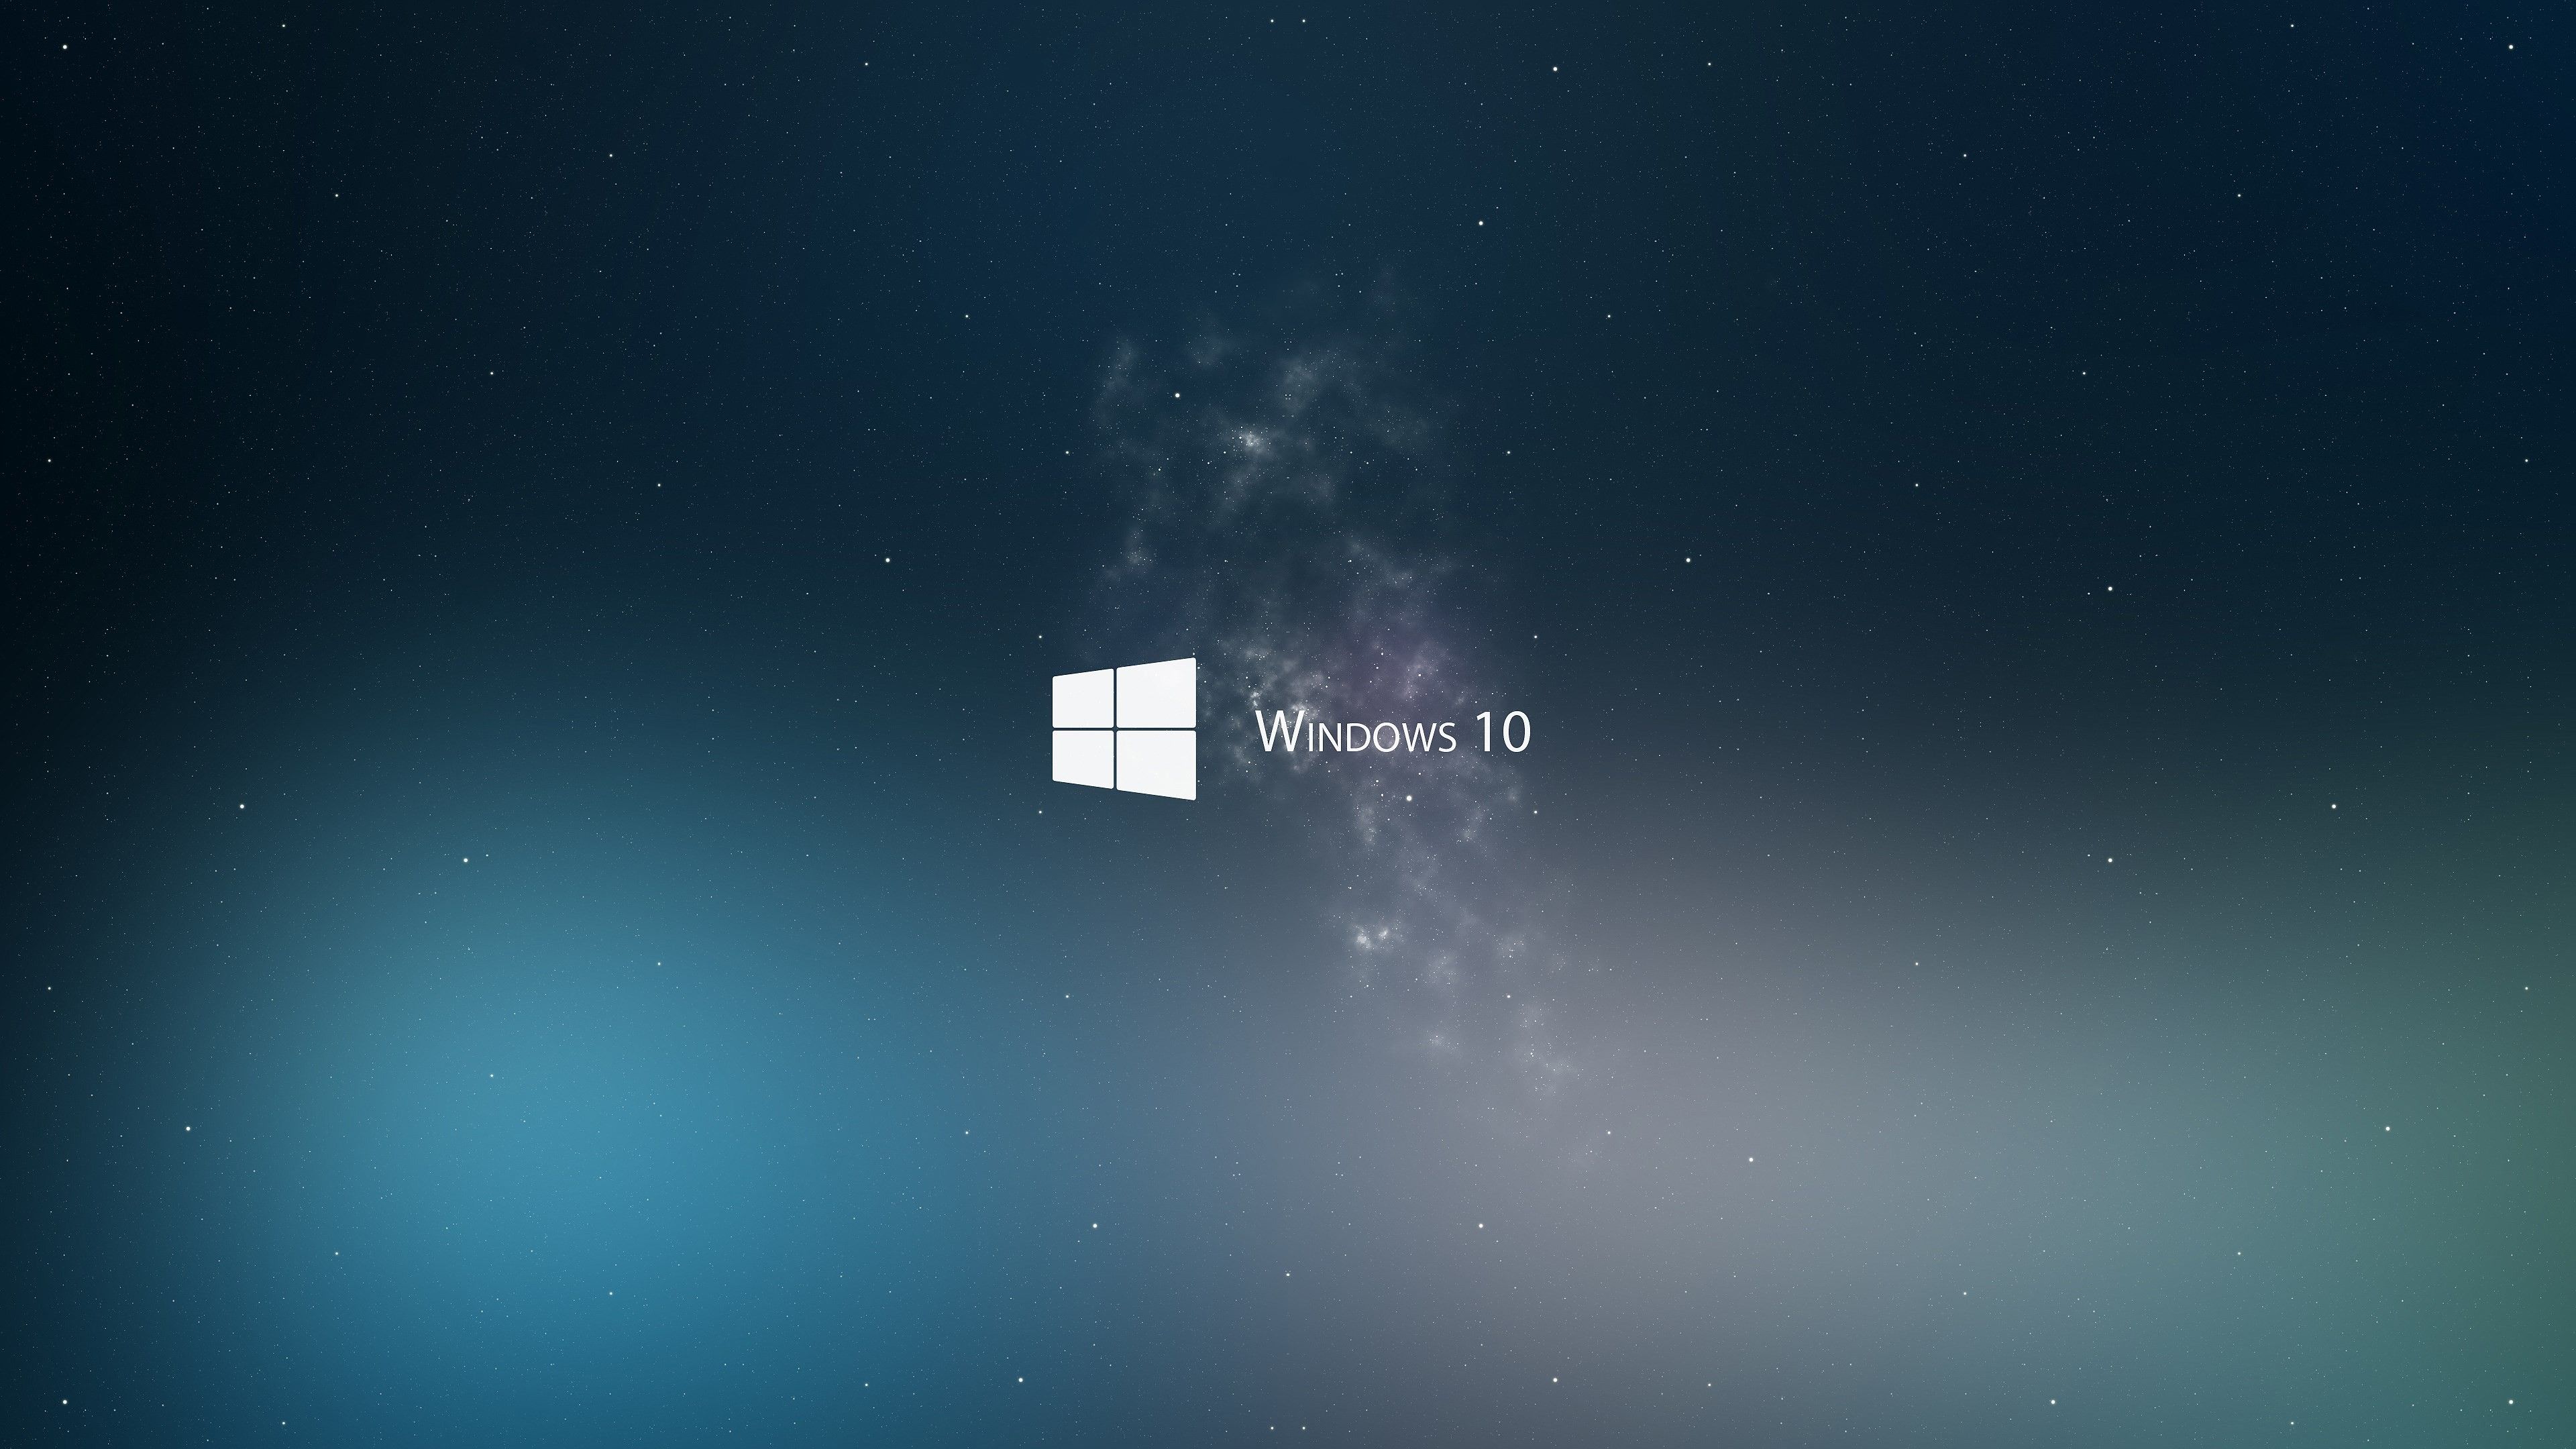 Fondos de pantalla de Windows 10 - FondosMil